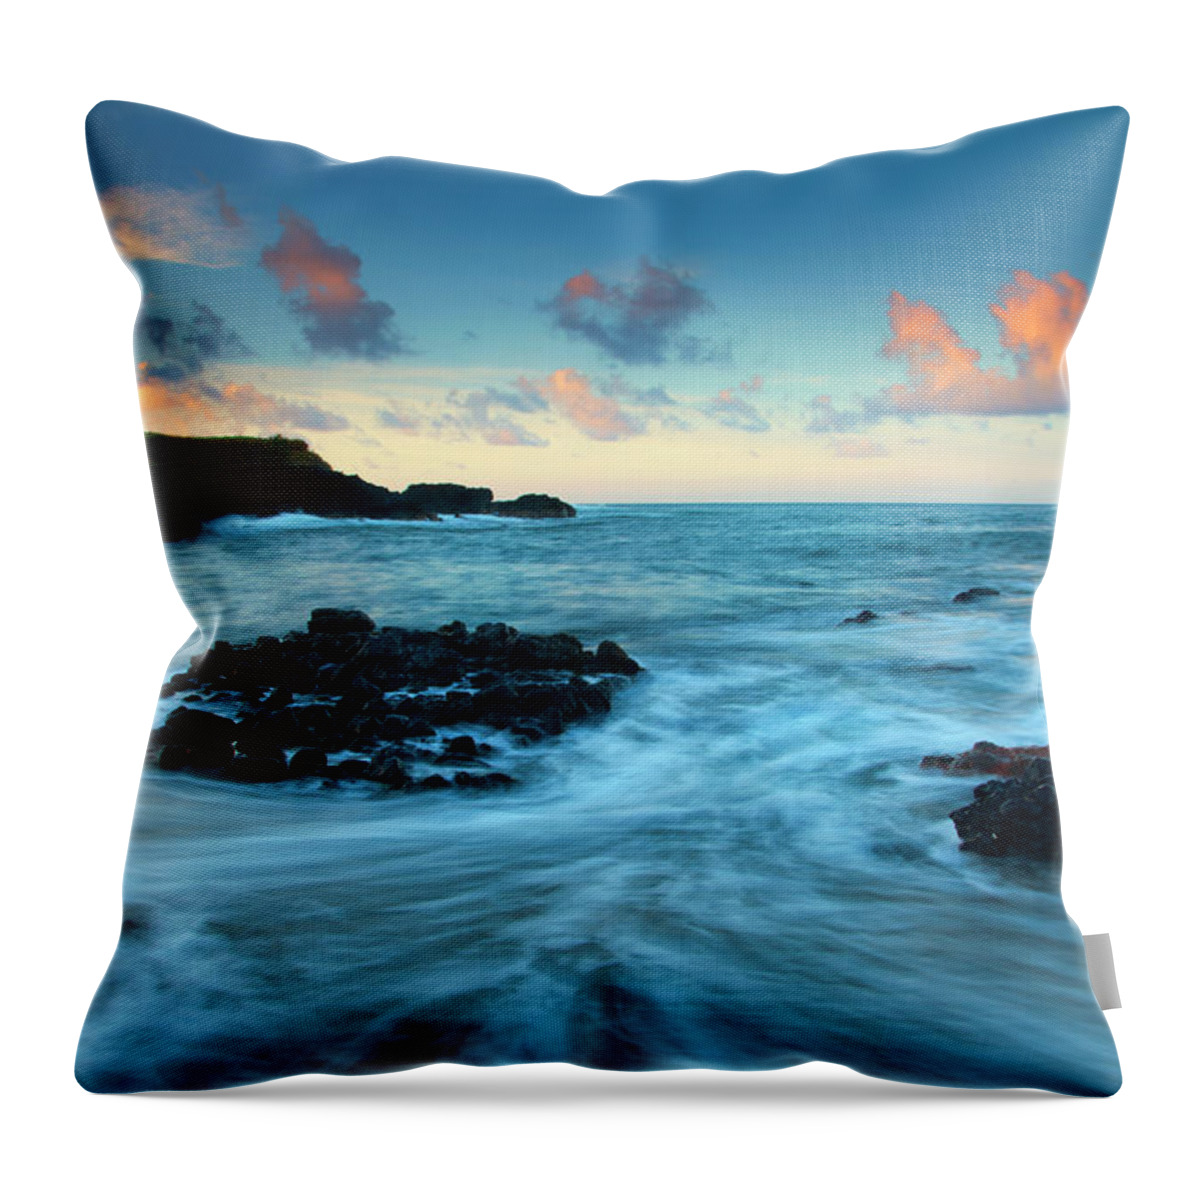 Glass Beach Throw Pillow featuring the photograph Glass Beach Dawn by Michael Dawson